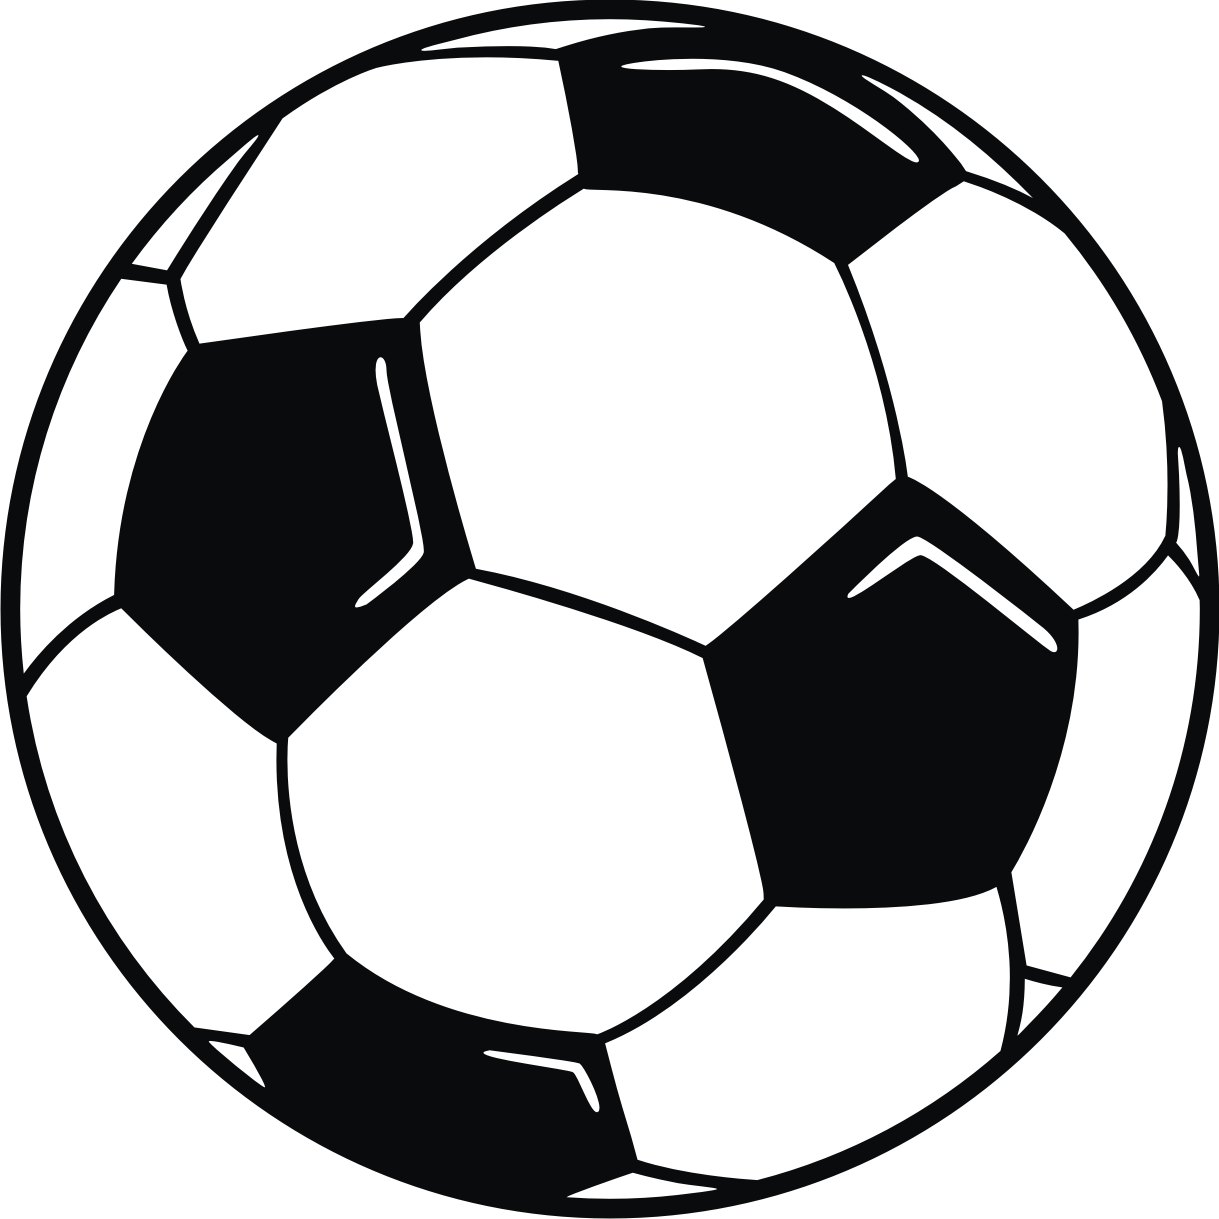 Soccer ball clip art download